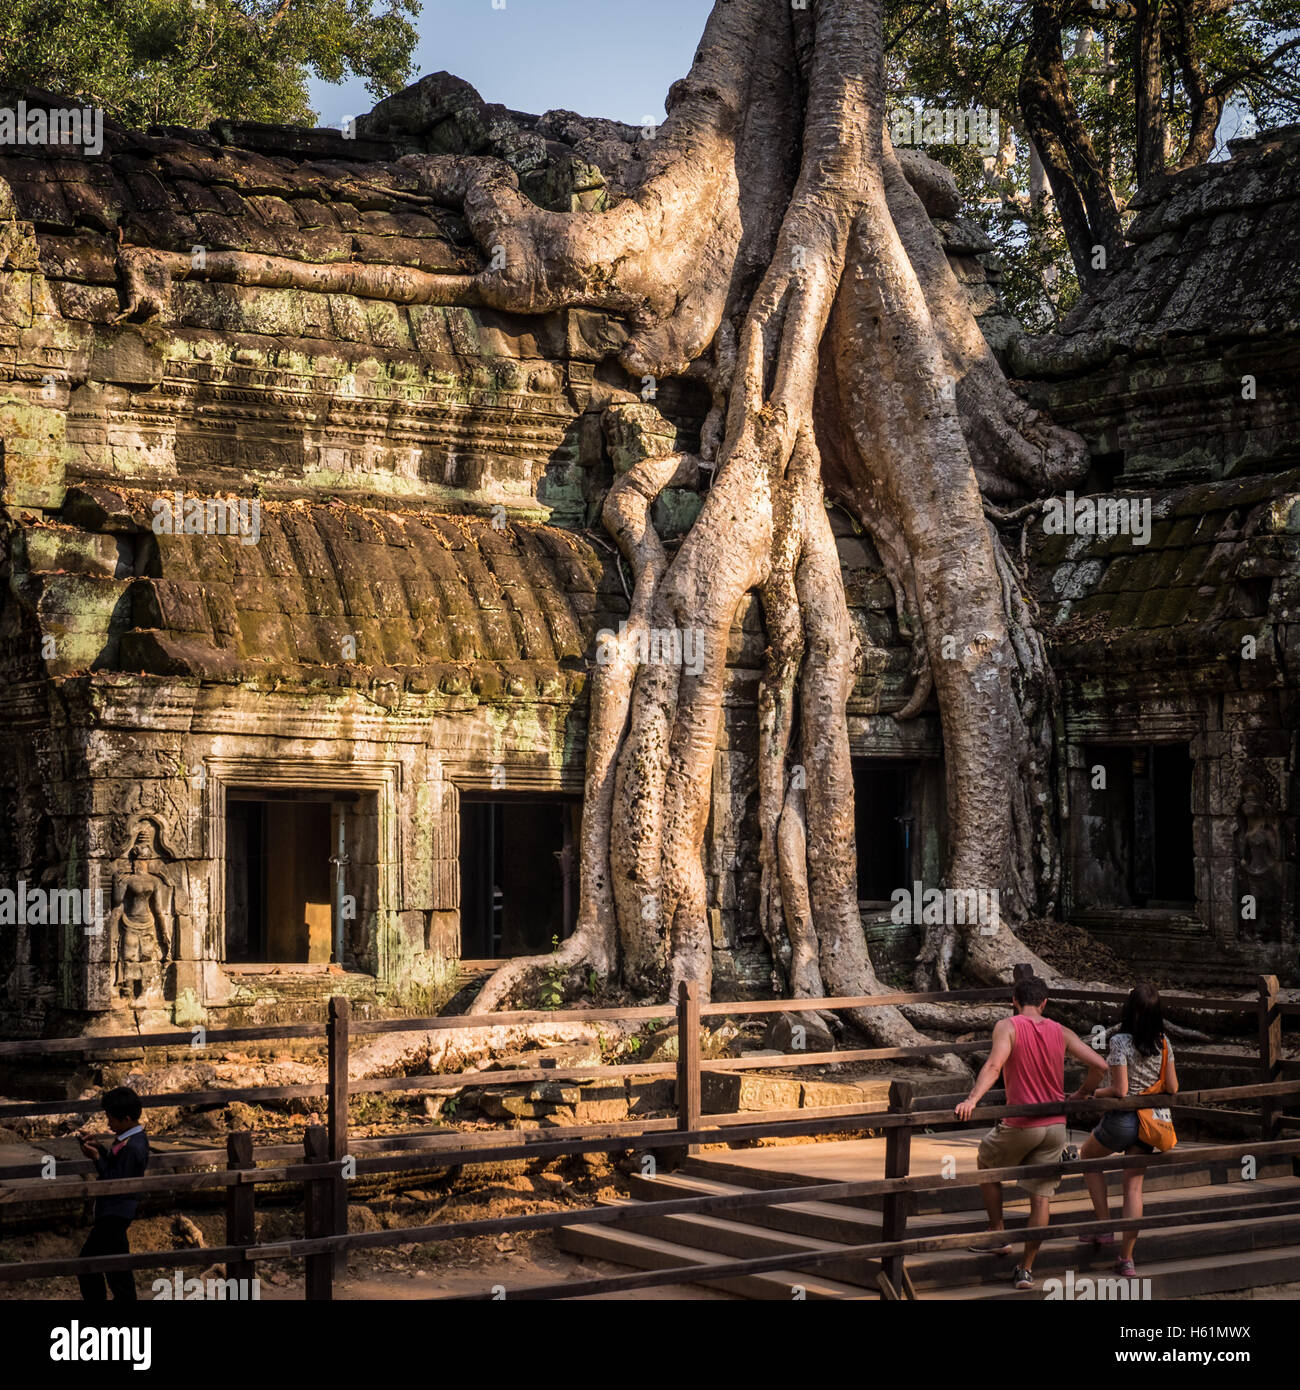 Les gens d'admirer les racines de l'arbre qui engloutit les bâtiments du Temple Ta Prohm, Cambodge Banque D'Images